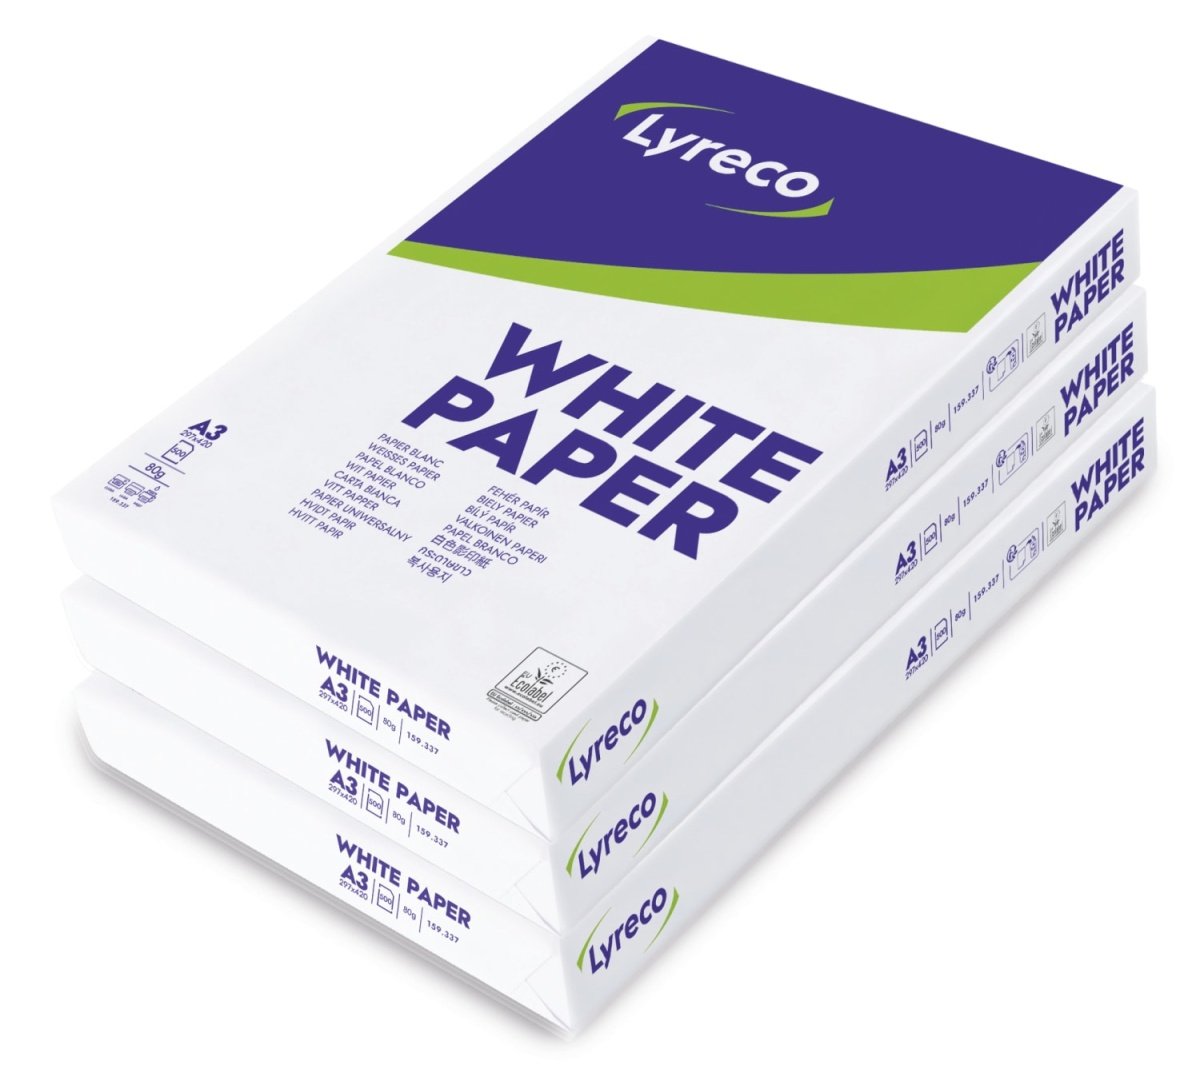 Printerpapir, A3, 80 kasse med 3 ark (881880379) billigt! ‒